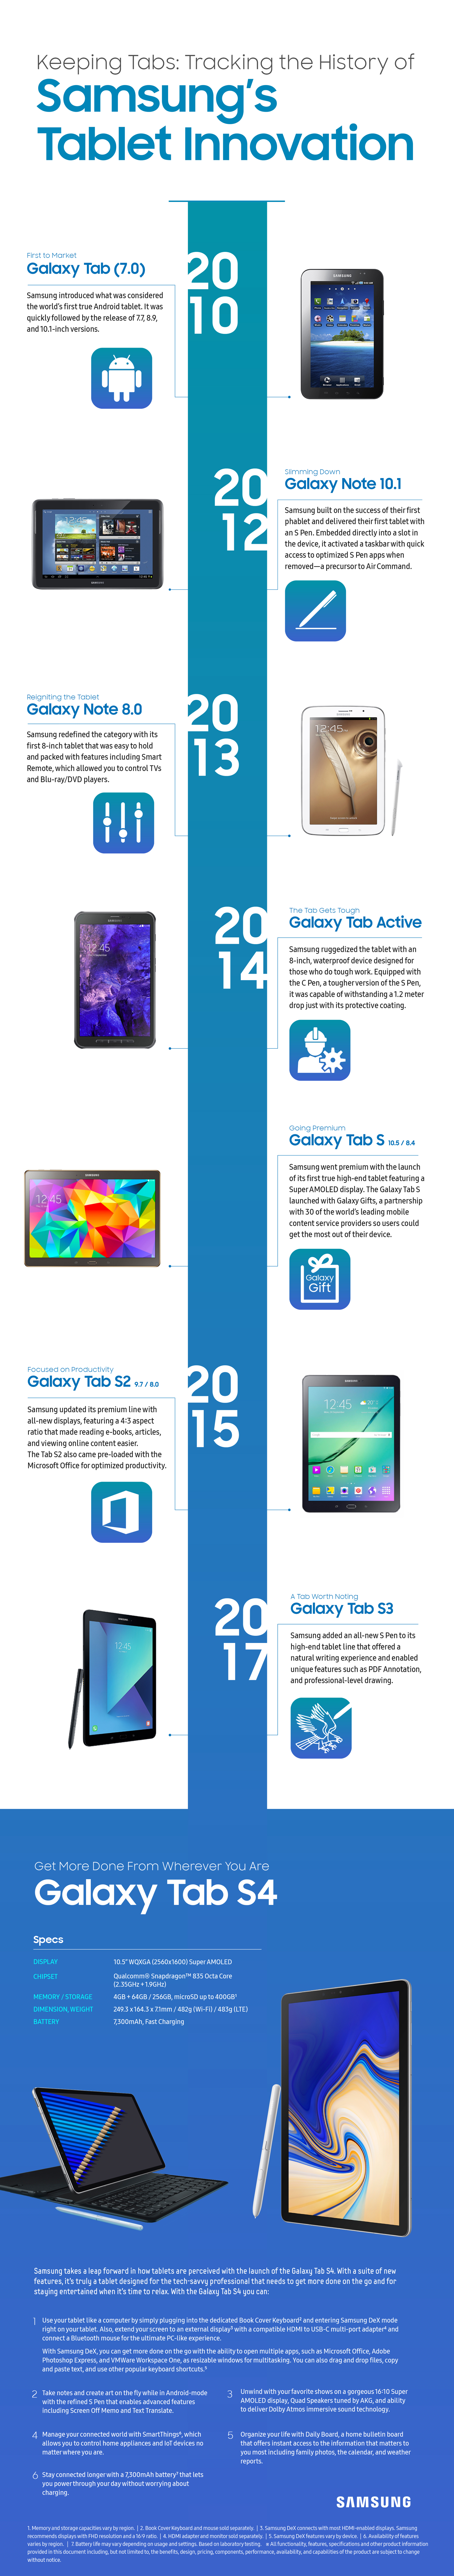 Samsung's Tablet Innovation